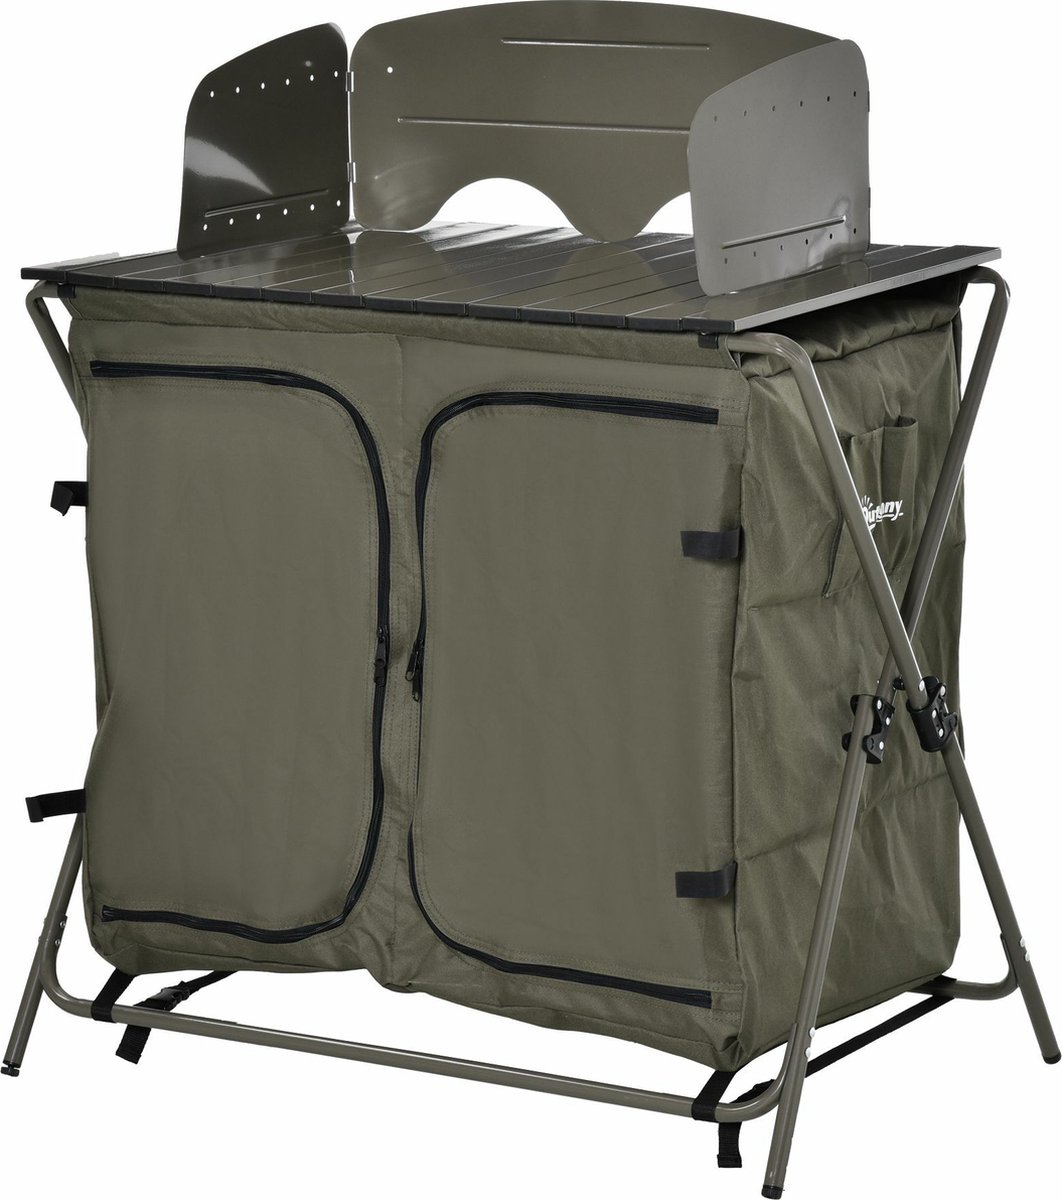 Outsunny Campingkast inklapbare kast keukenbox draagbaar inklapbaar 600D oxford stof groen A20-198